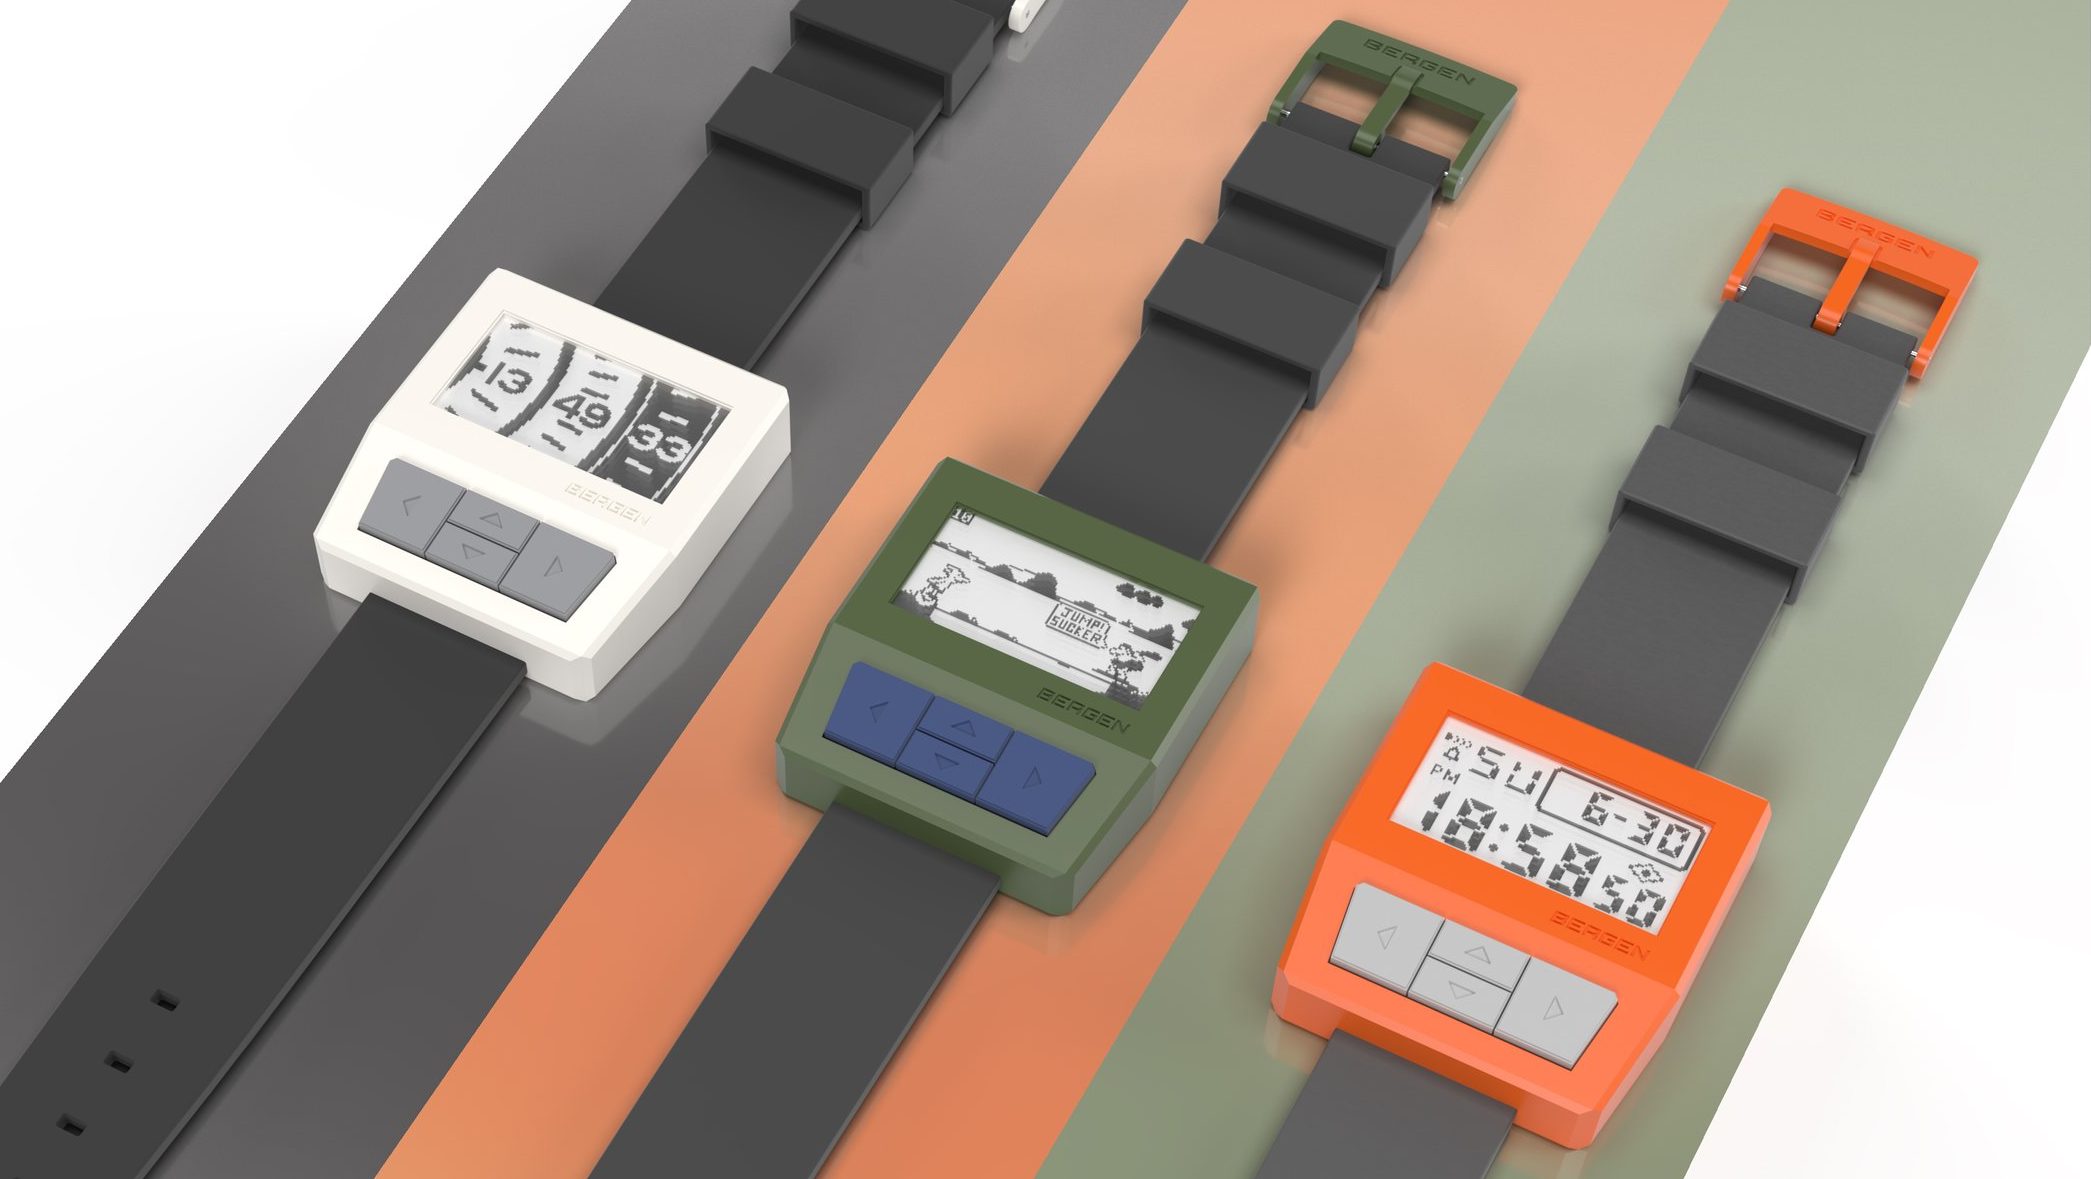 Die Designstudie von Arduwatch ist ein überzeugendes Konzept für eine DIY-Smartwatch